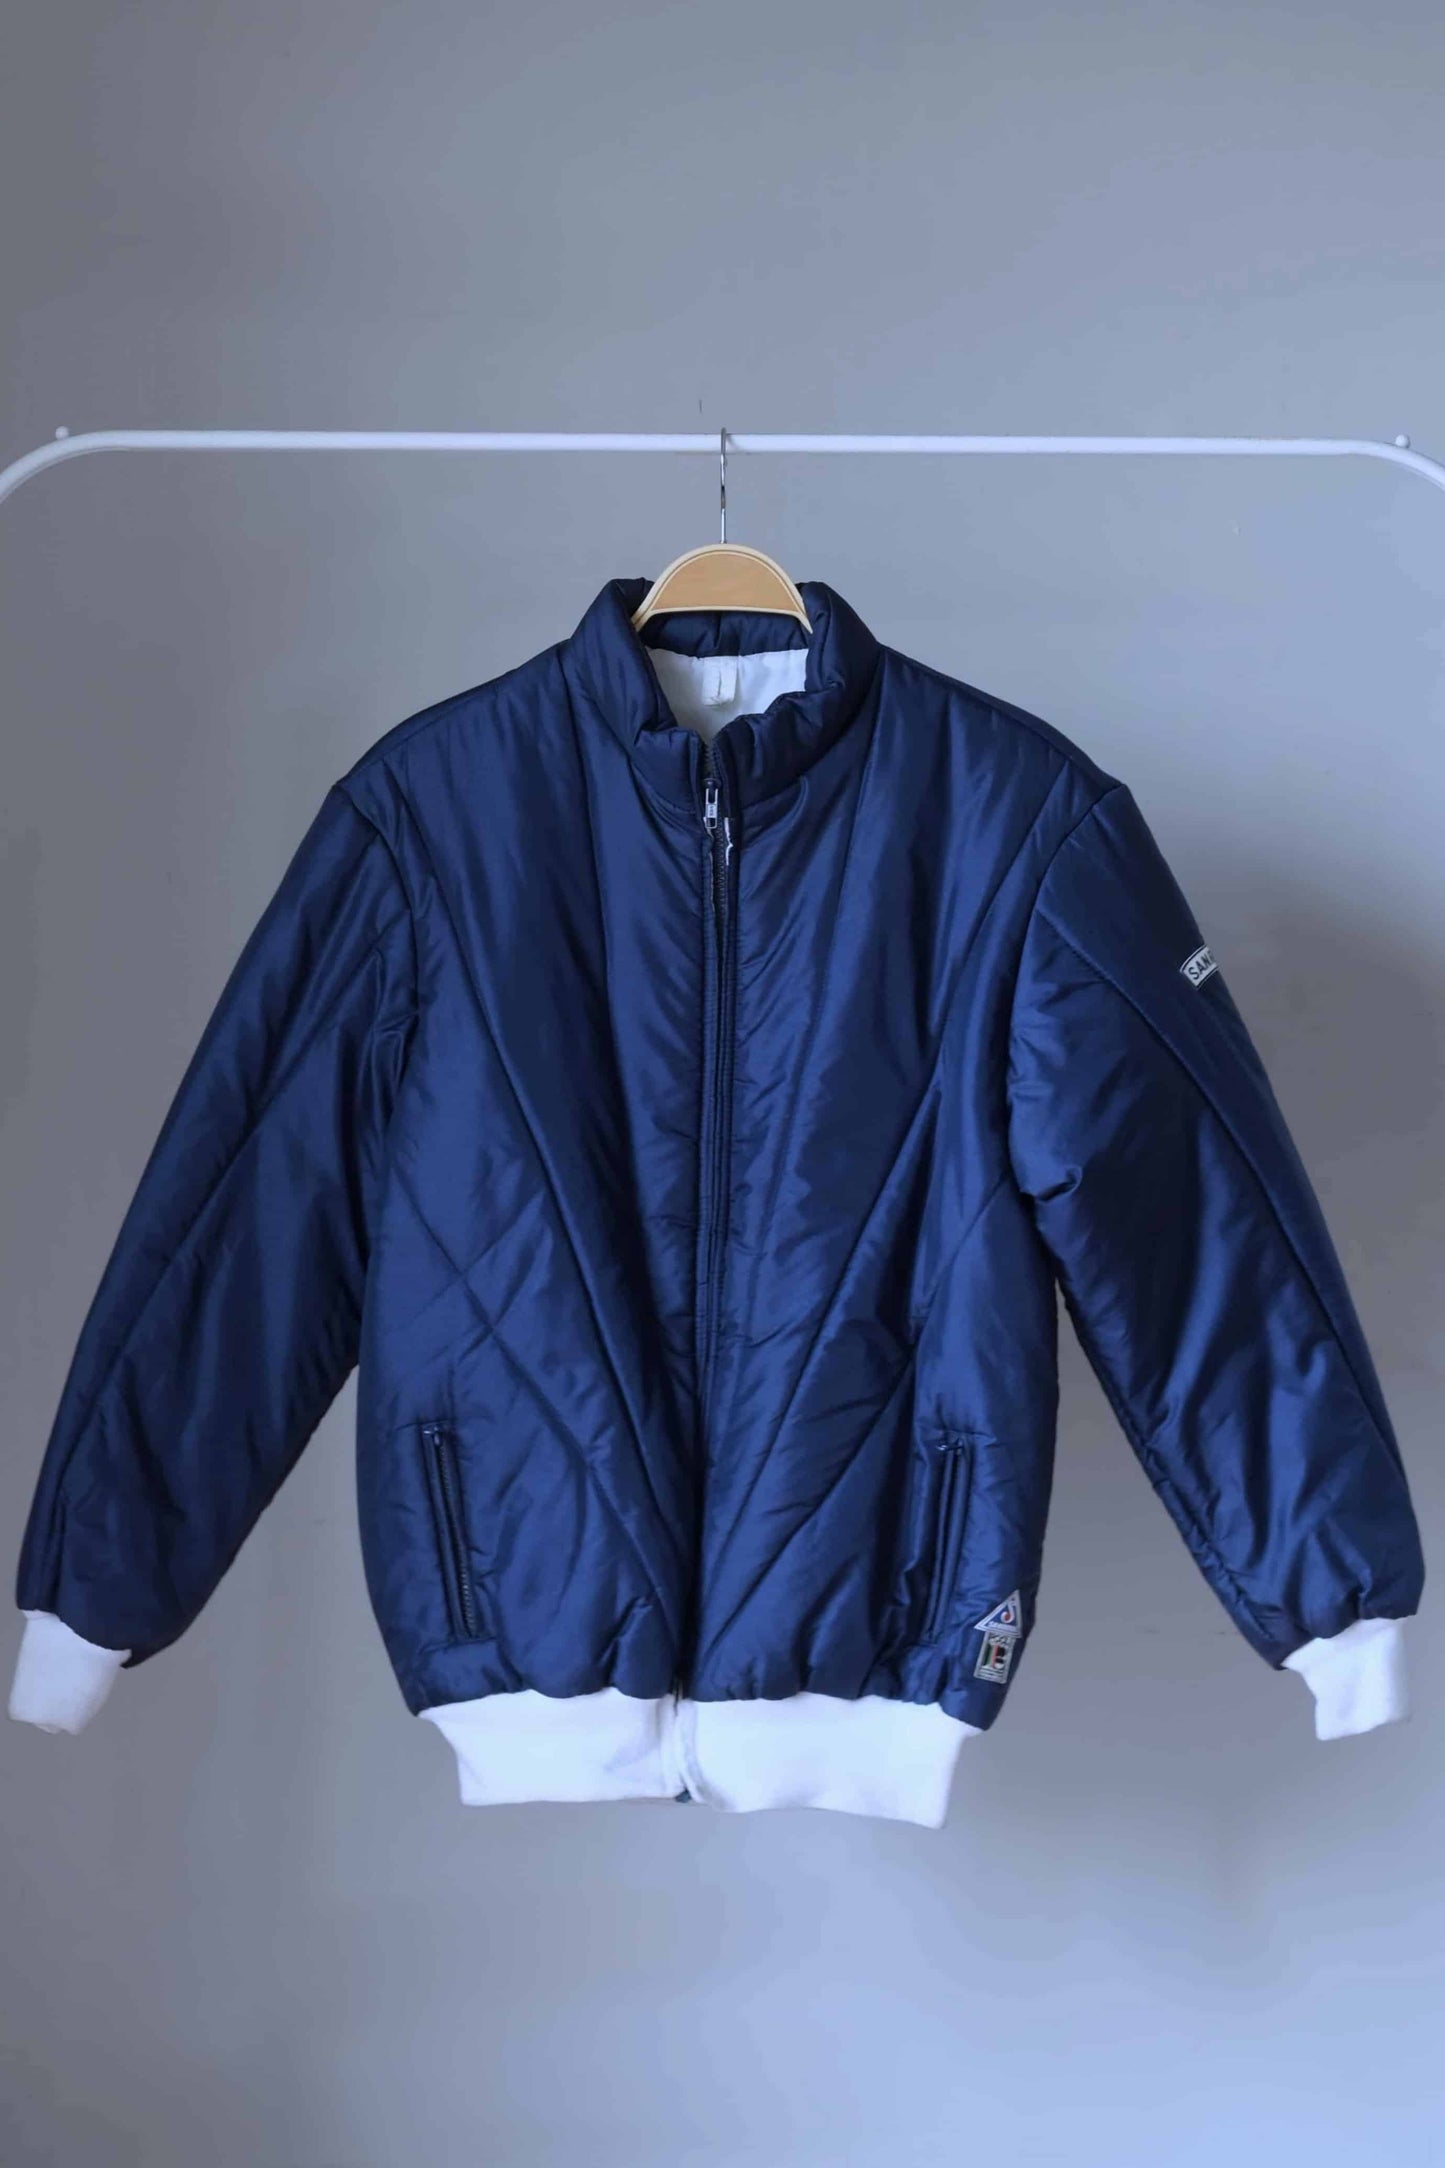 SANRIVAL Vintage 70's Ski Jacket on hanger, color: navy blue.